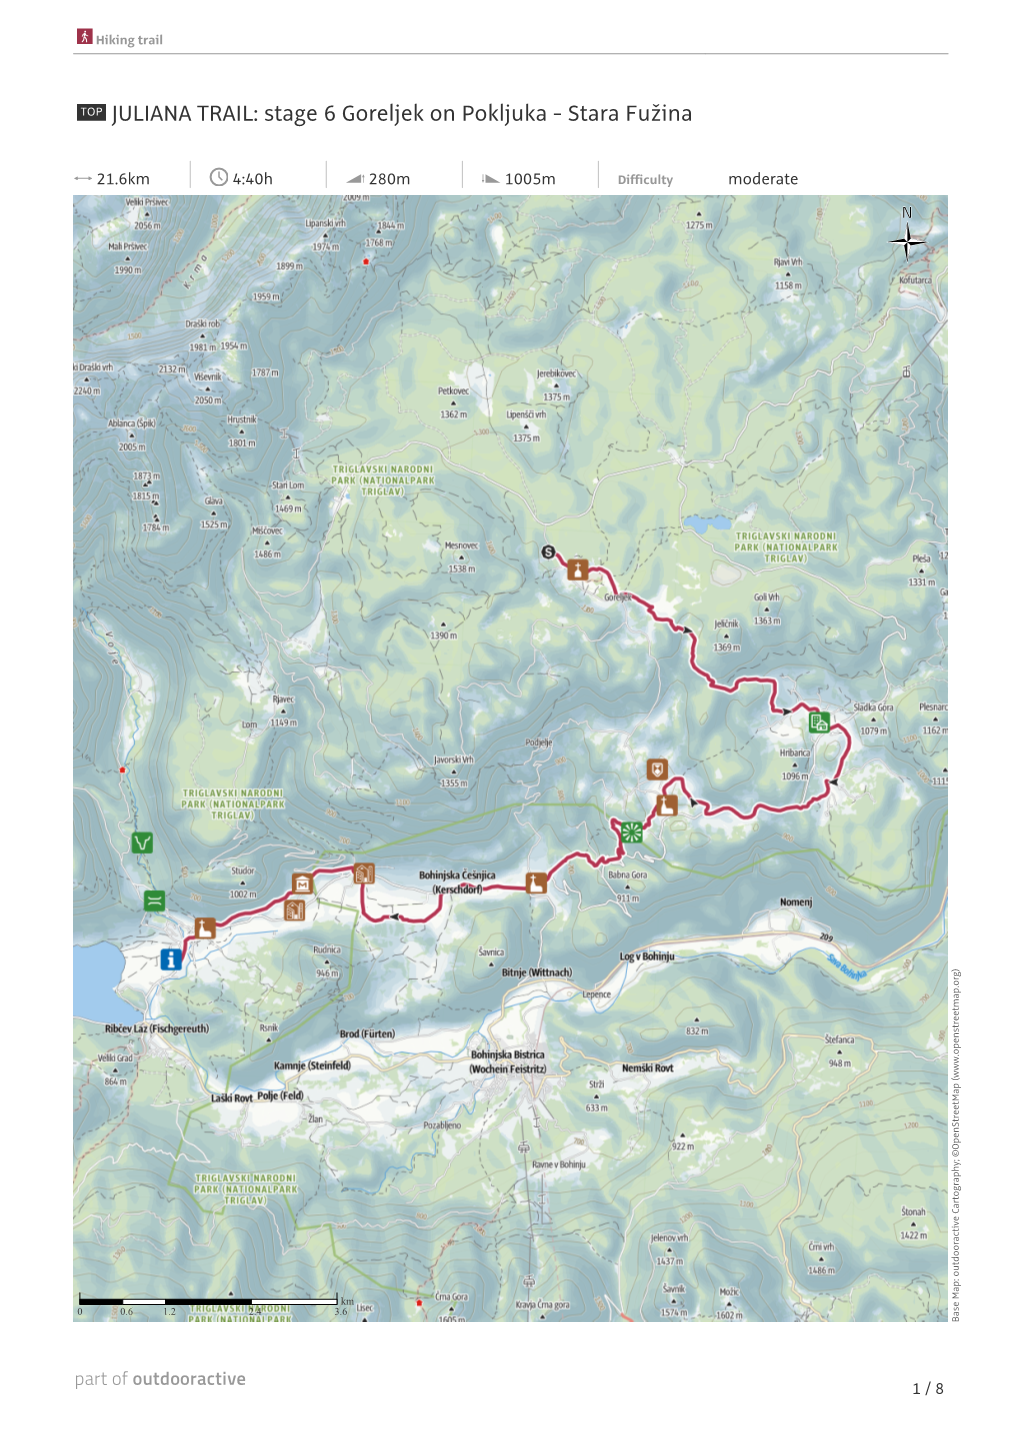 JULIANA TRAIL: Stage 6 Goreljek on Pokljuka - Stara Fužina